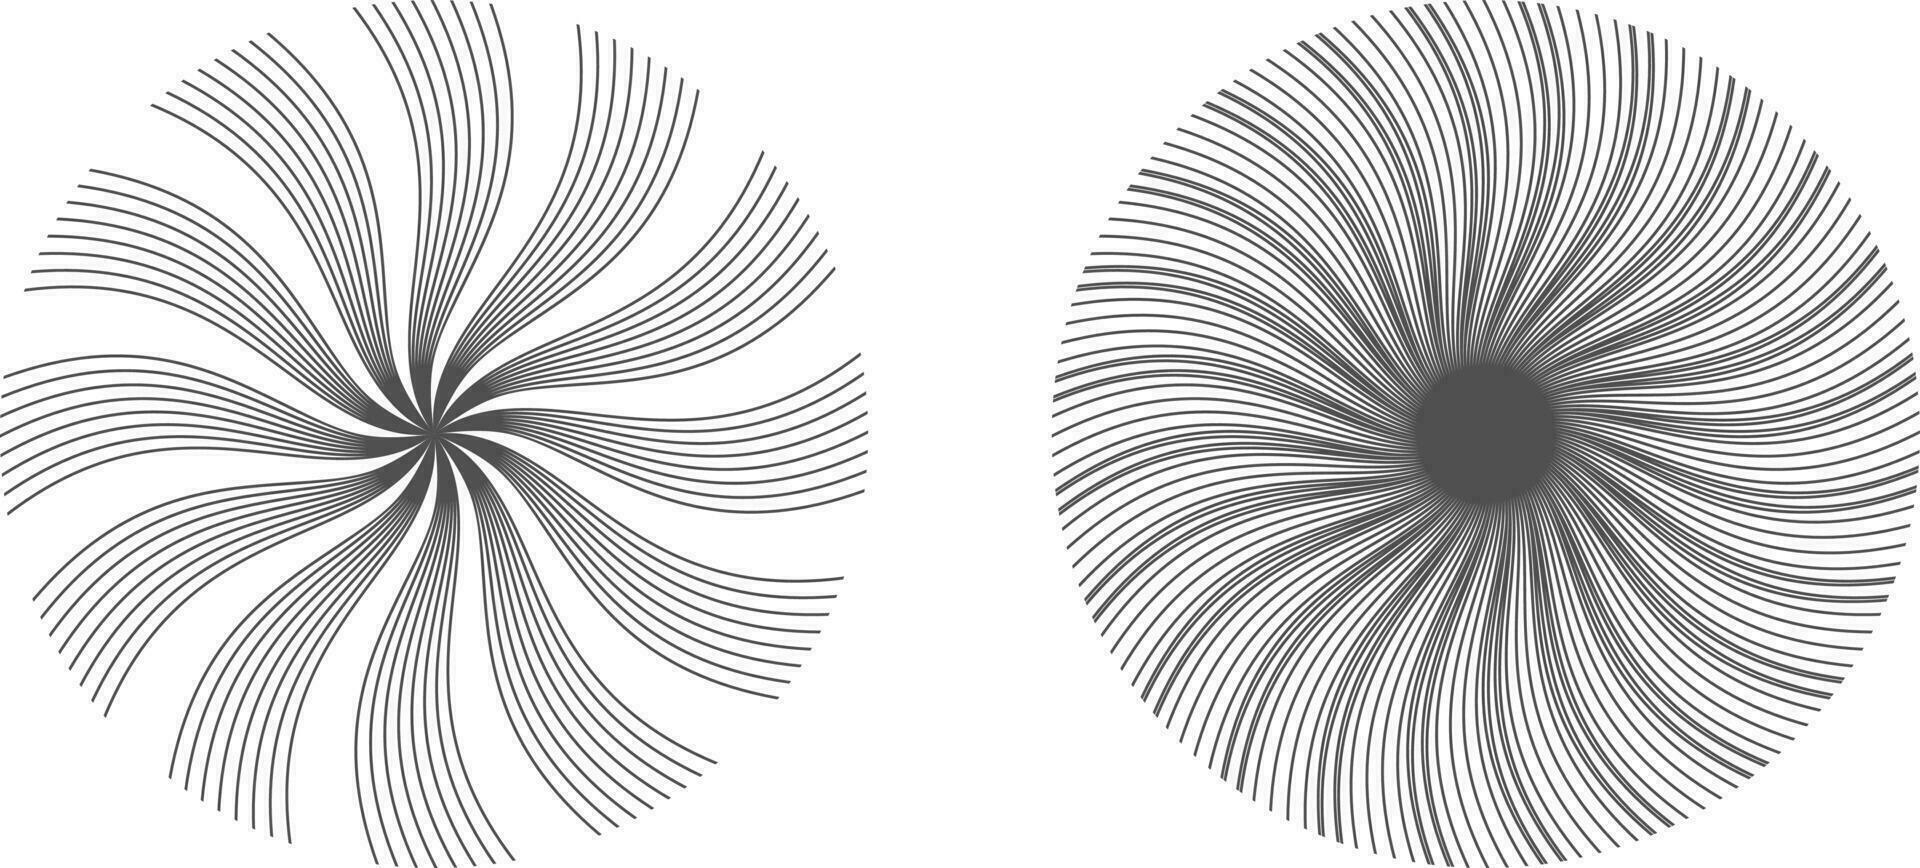 svart och vit cirkel runt om prydnad blomma abstrakt vektor illustrationer